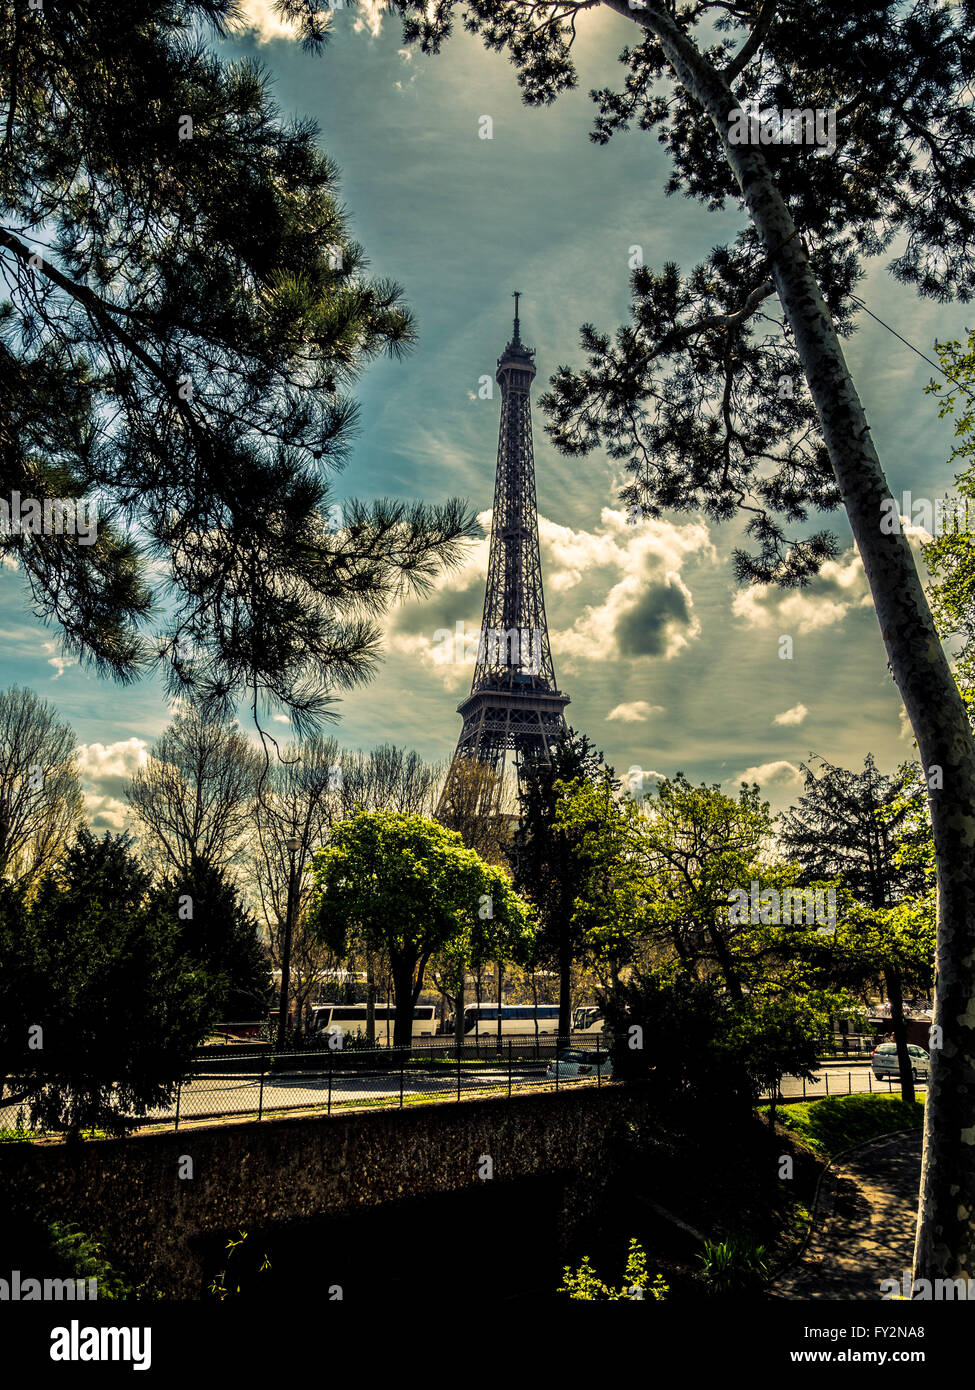 La Tour Eiffel vue à travers les arbres, Paris, France. Banque D'Images